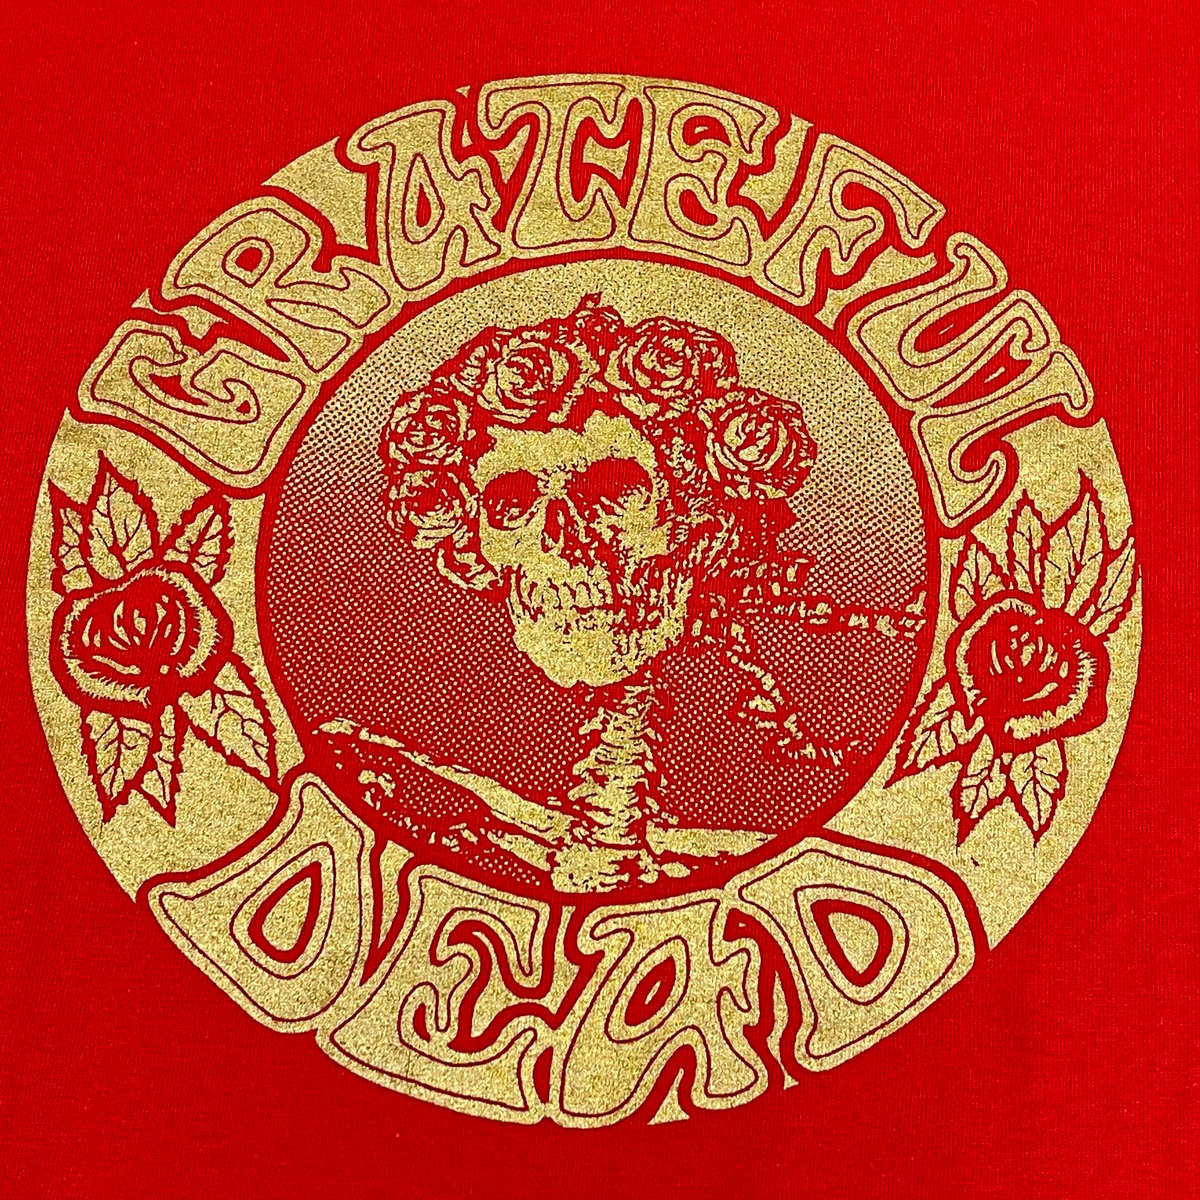 Original Vintage Grateful Dead 1990's Seva Short Sleeve - LARGE!